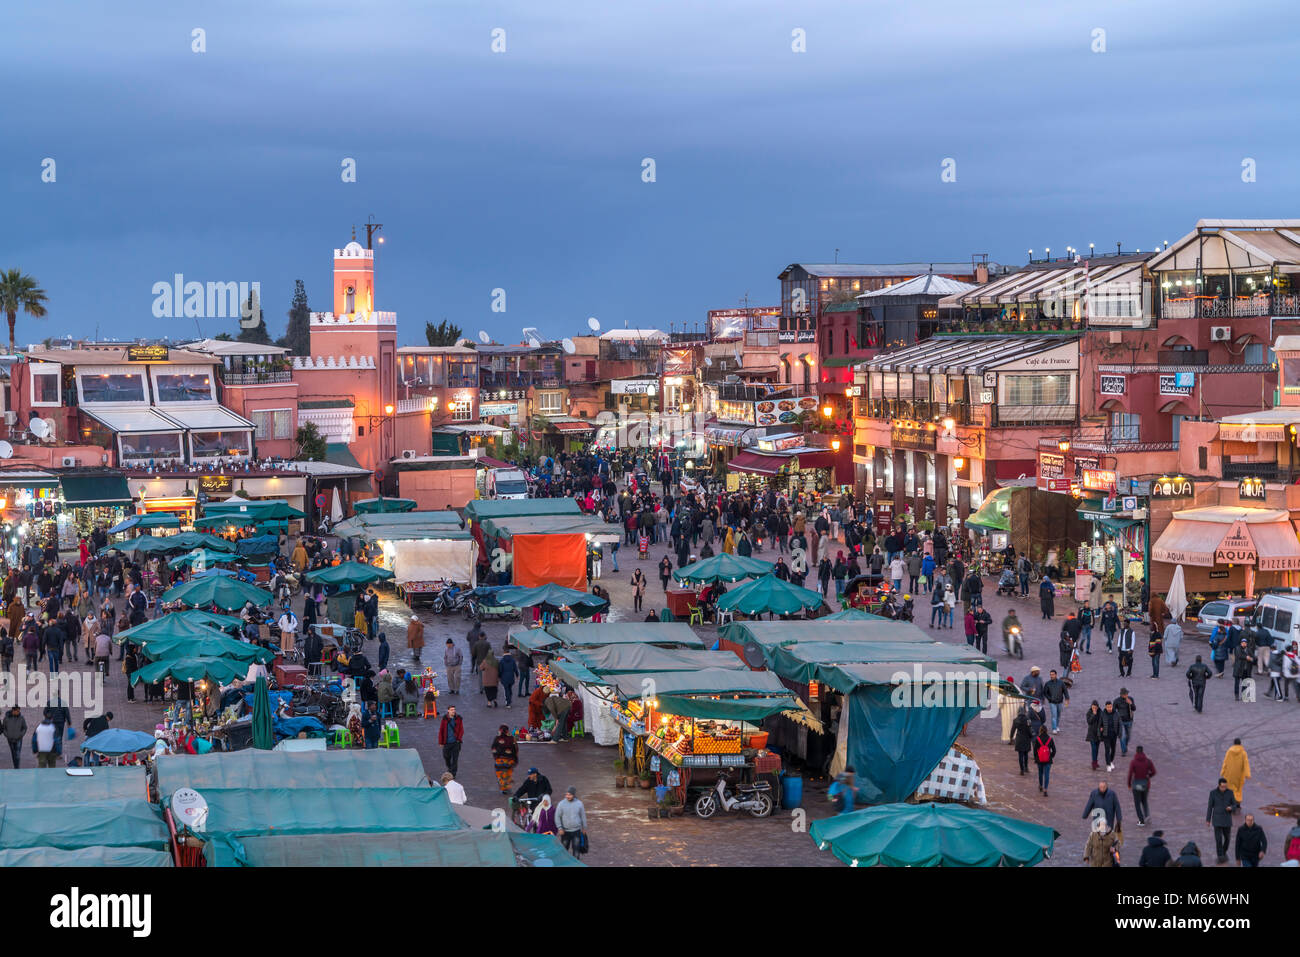 Plaza del mercado de Djemaa el Fnaa al anochecer, Marrakech, Marruecos Foto de stock